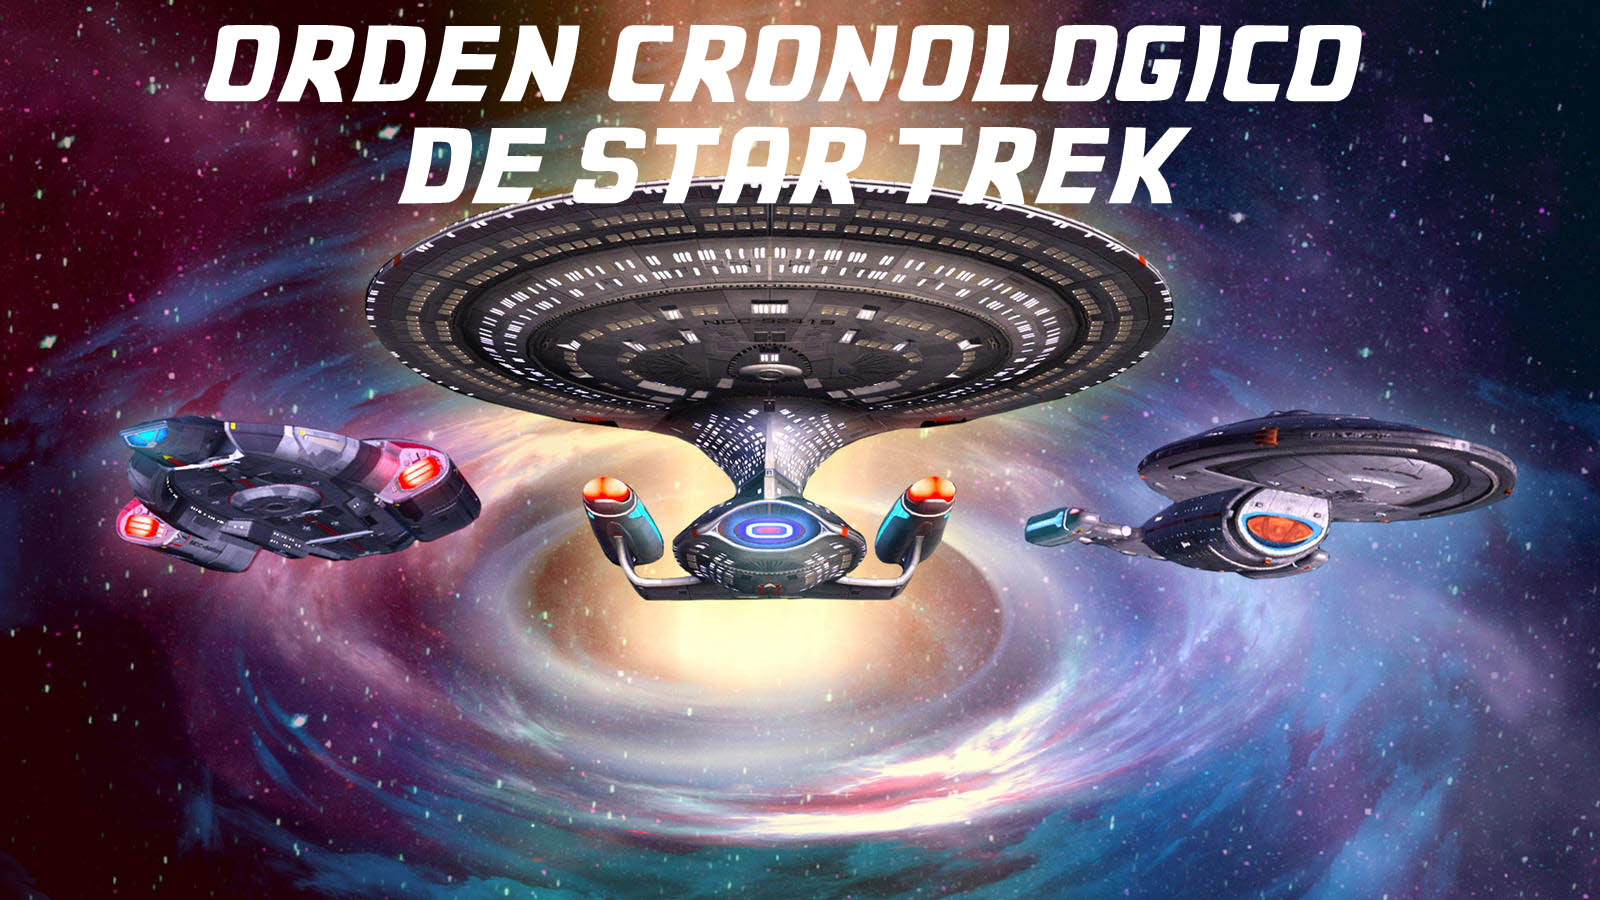 Star Trek orden cronológico completo solo apto para valientes